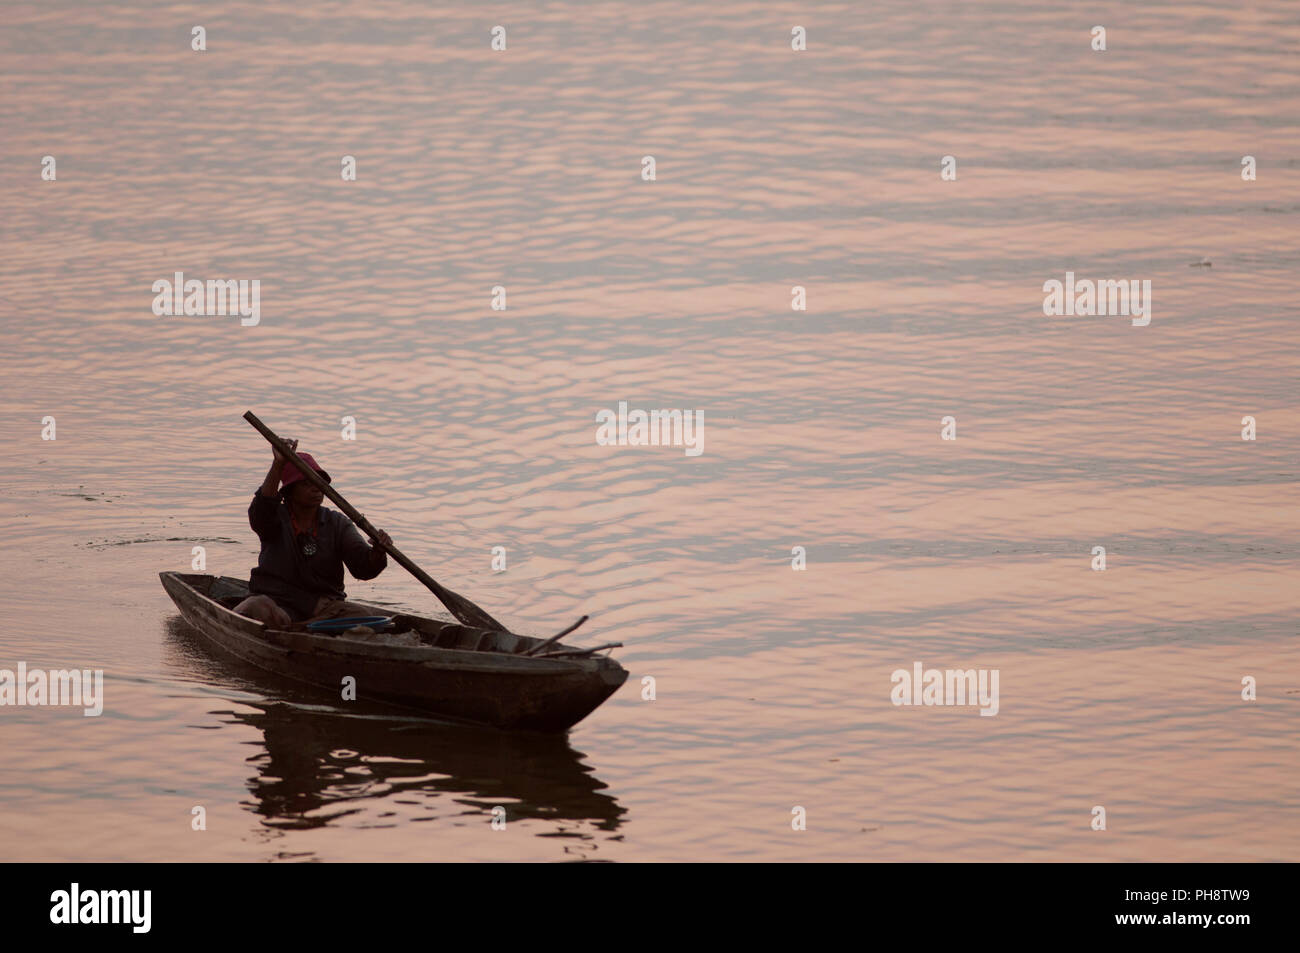 Thailand, Phatthalung, Fischer, Boot, Sunrise Pêcheur en Barque au Hebel du Soleil, Sud Thaïlande Stockfoto